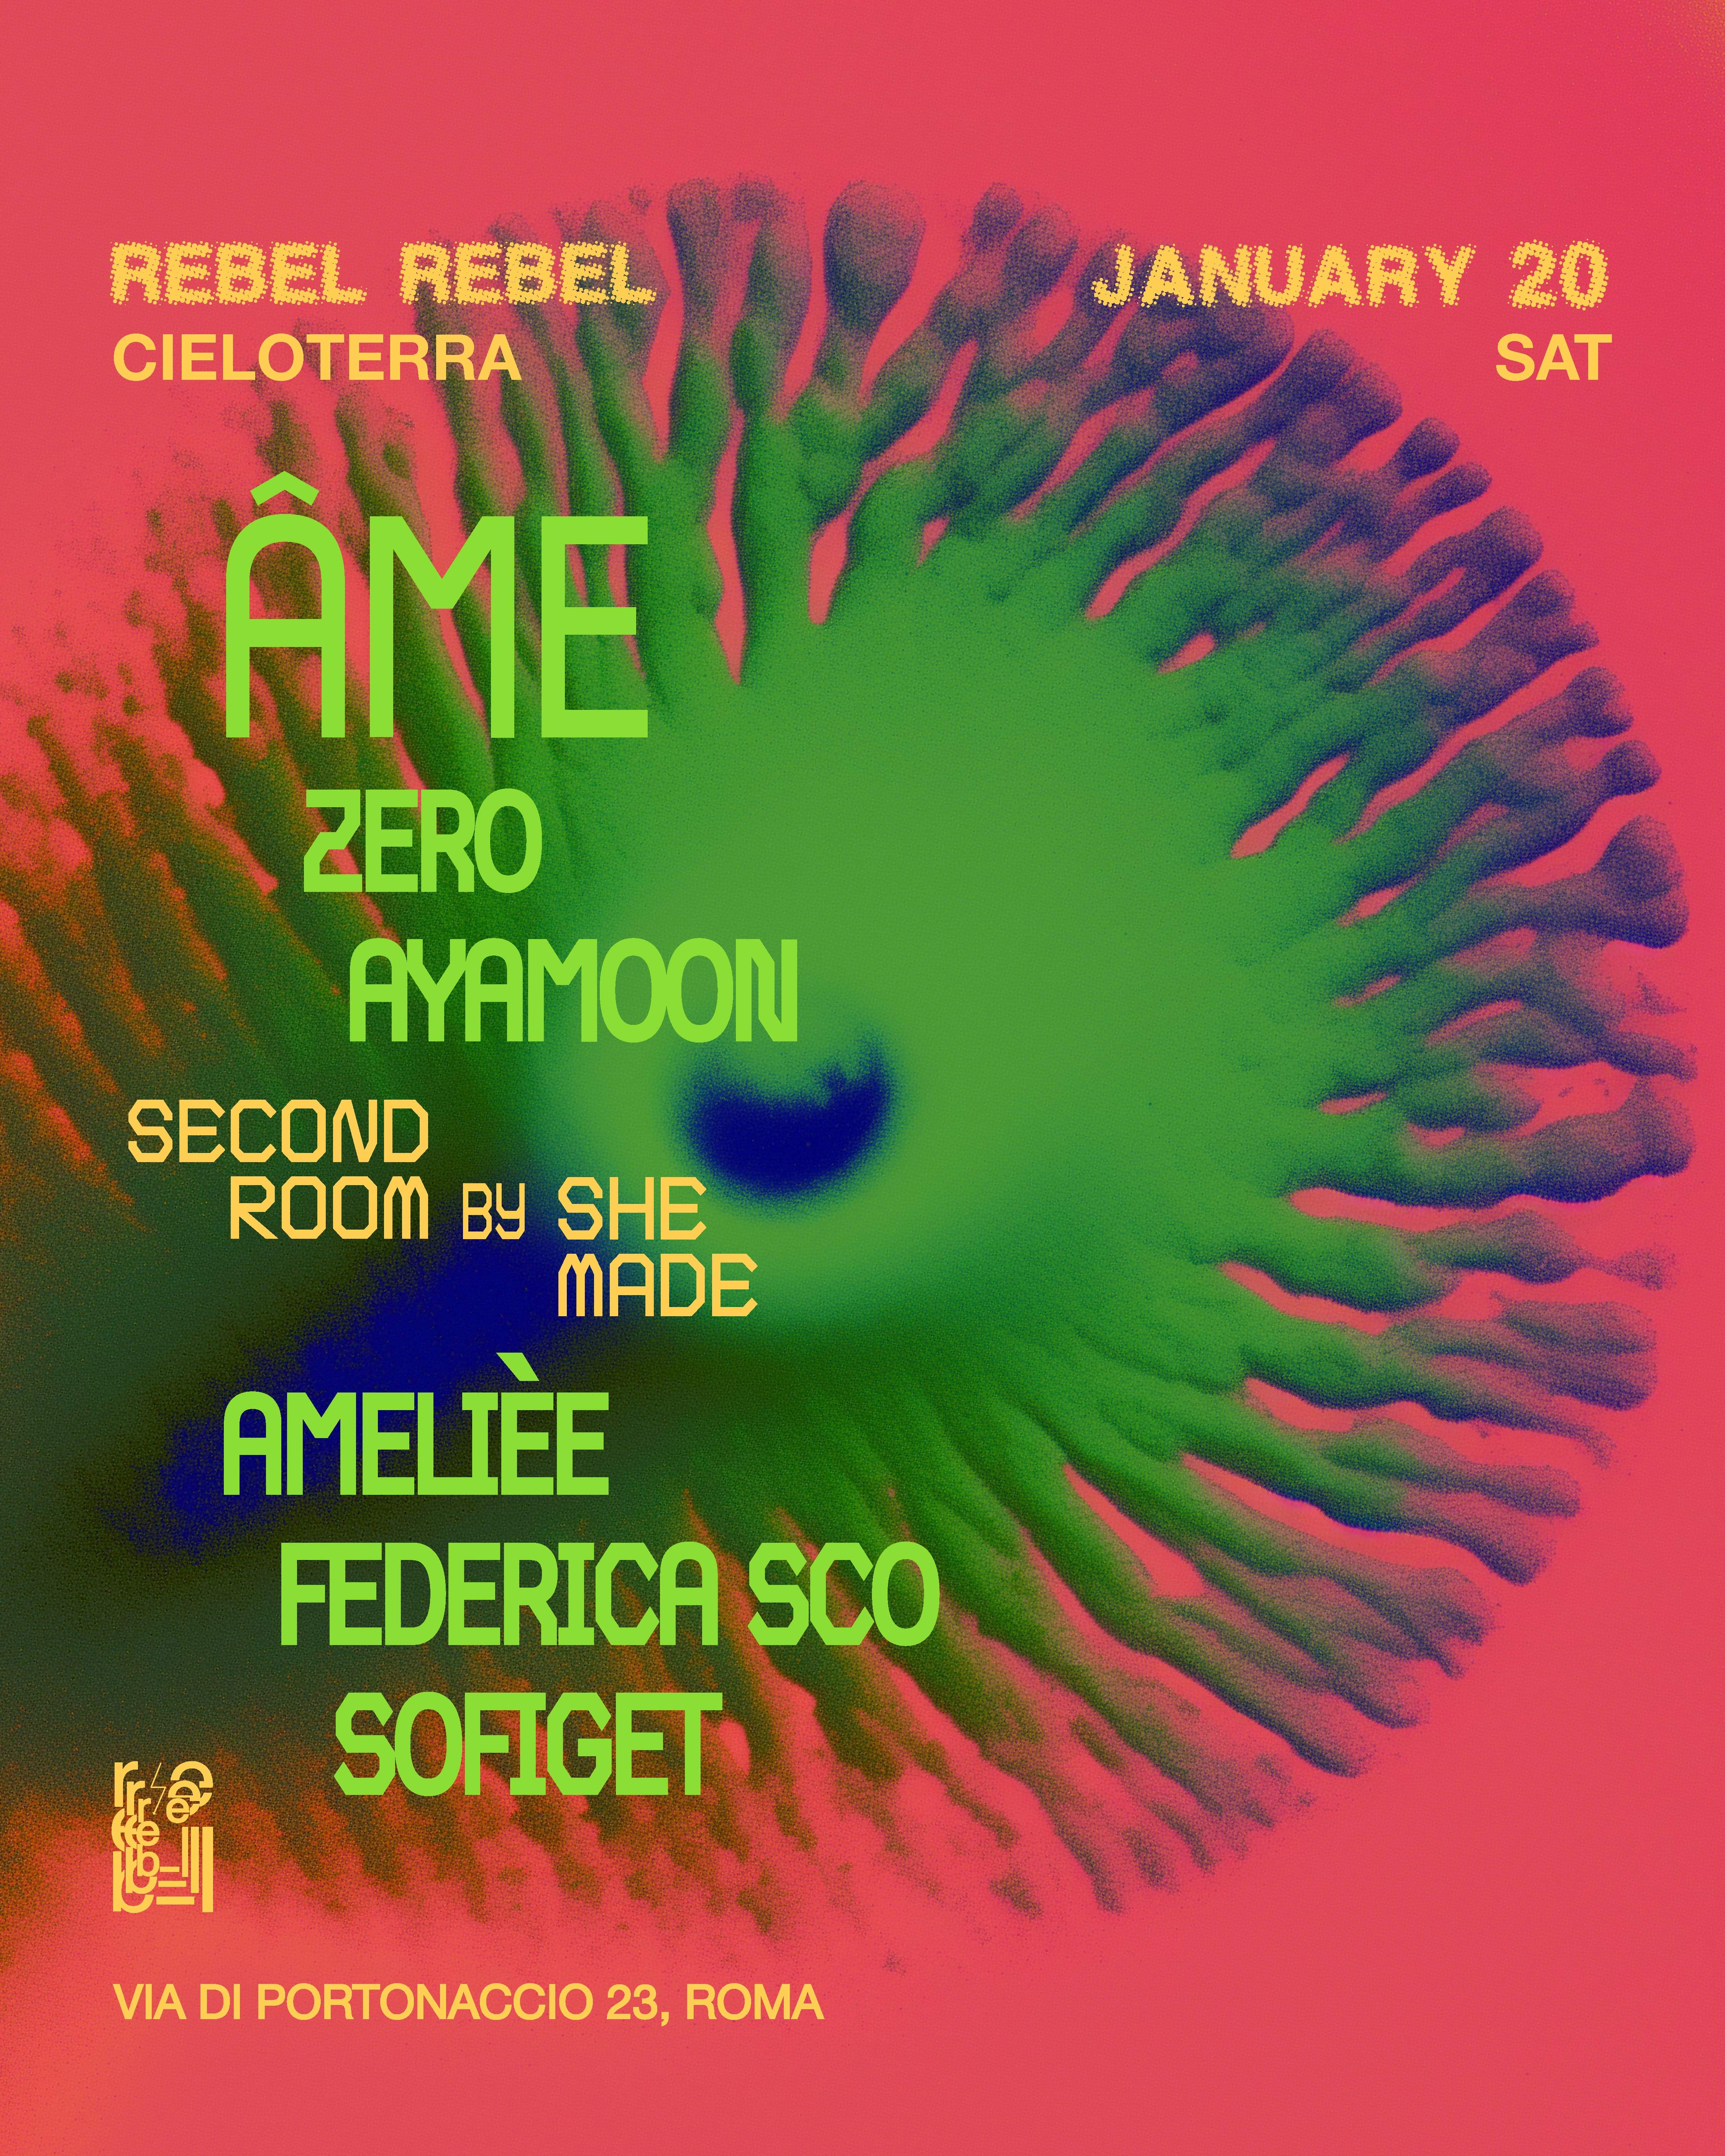 Rebel Rebel with AME - Página trasera